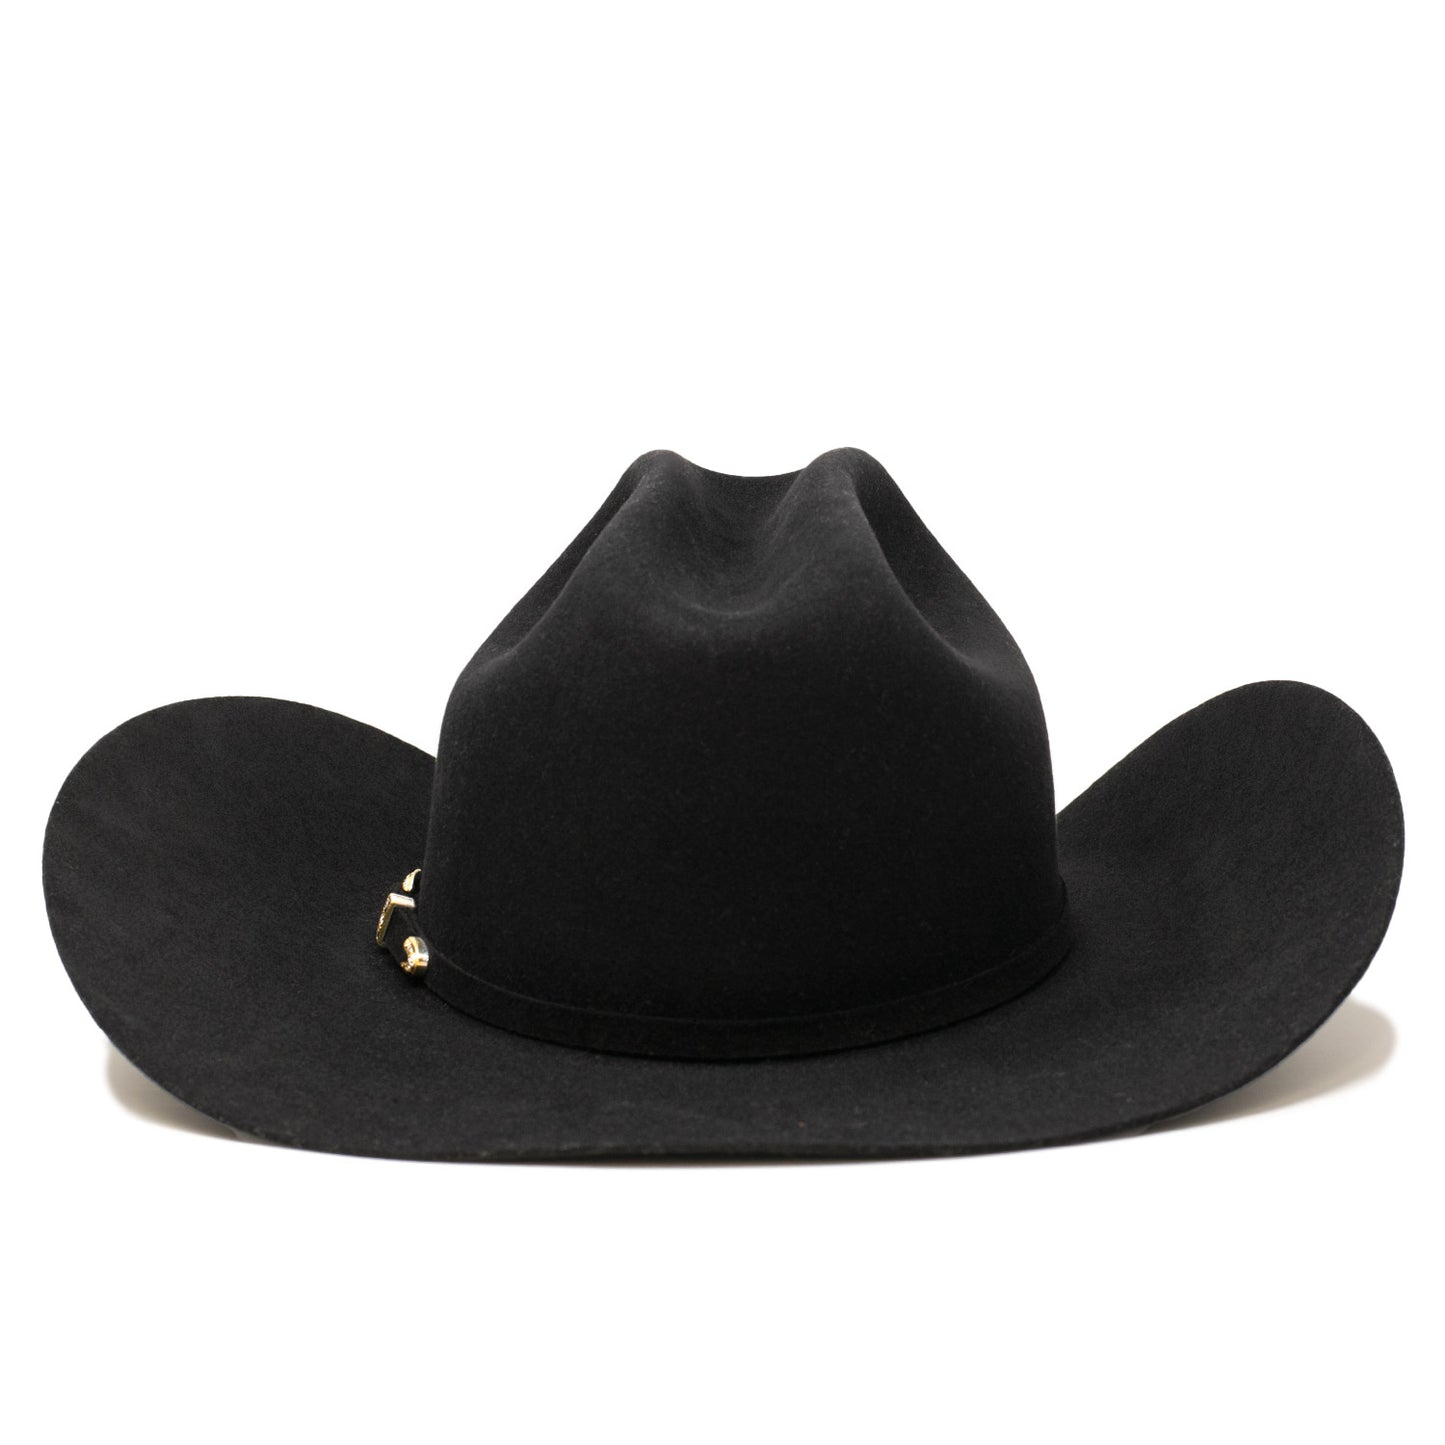 Yellowstone x Bailey Cowboy Western 10x chapeau